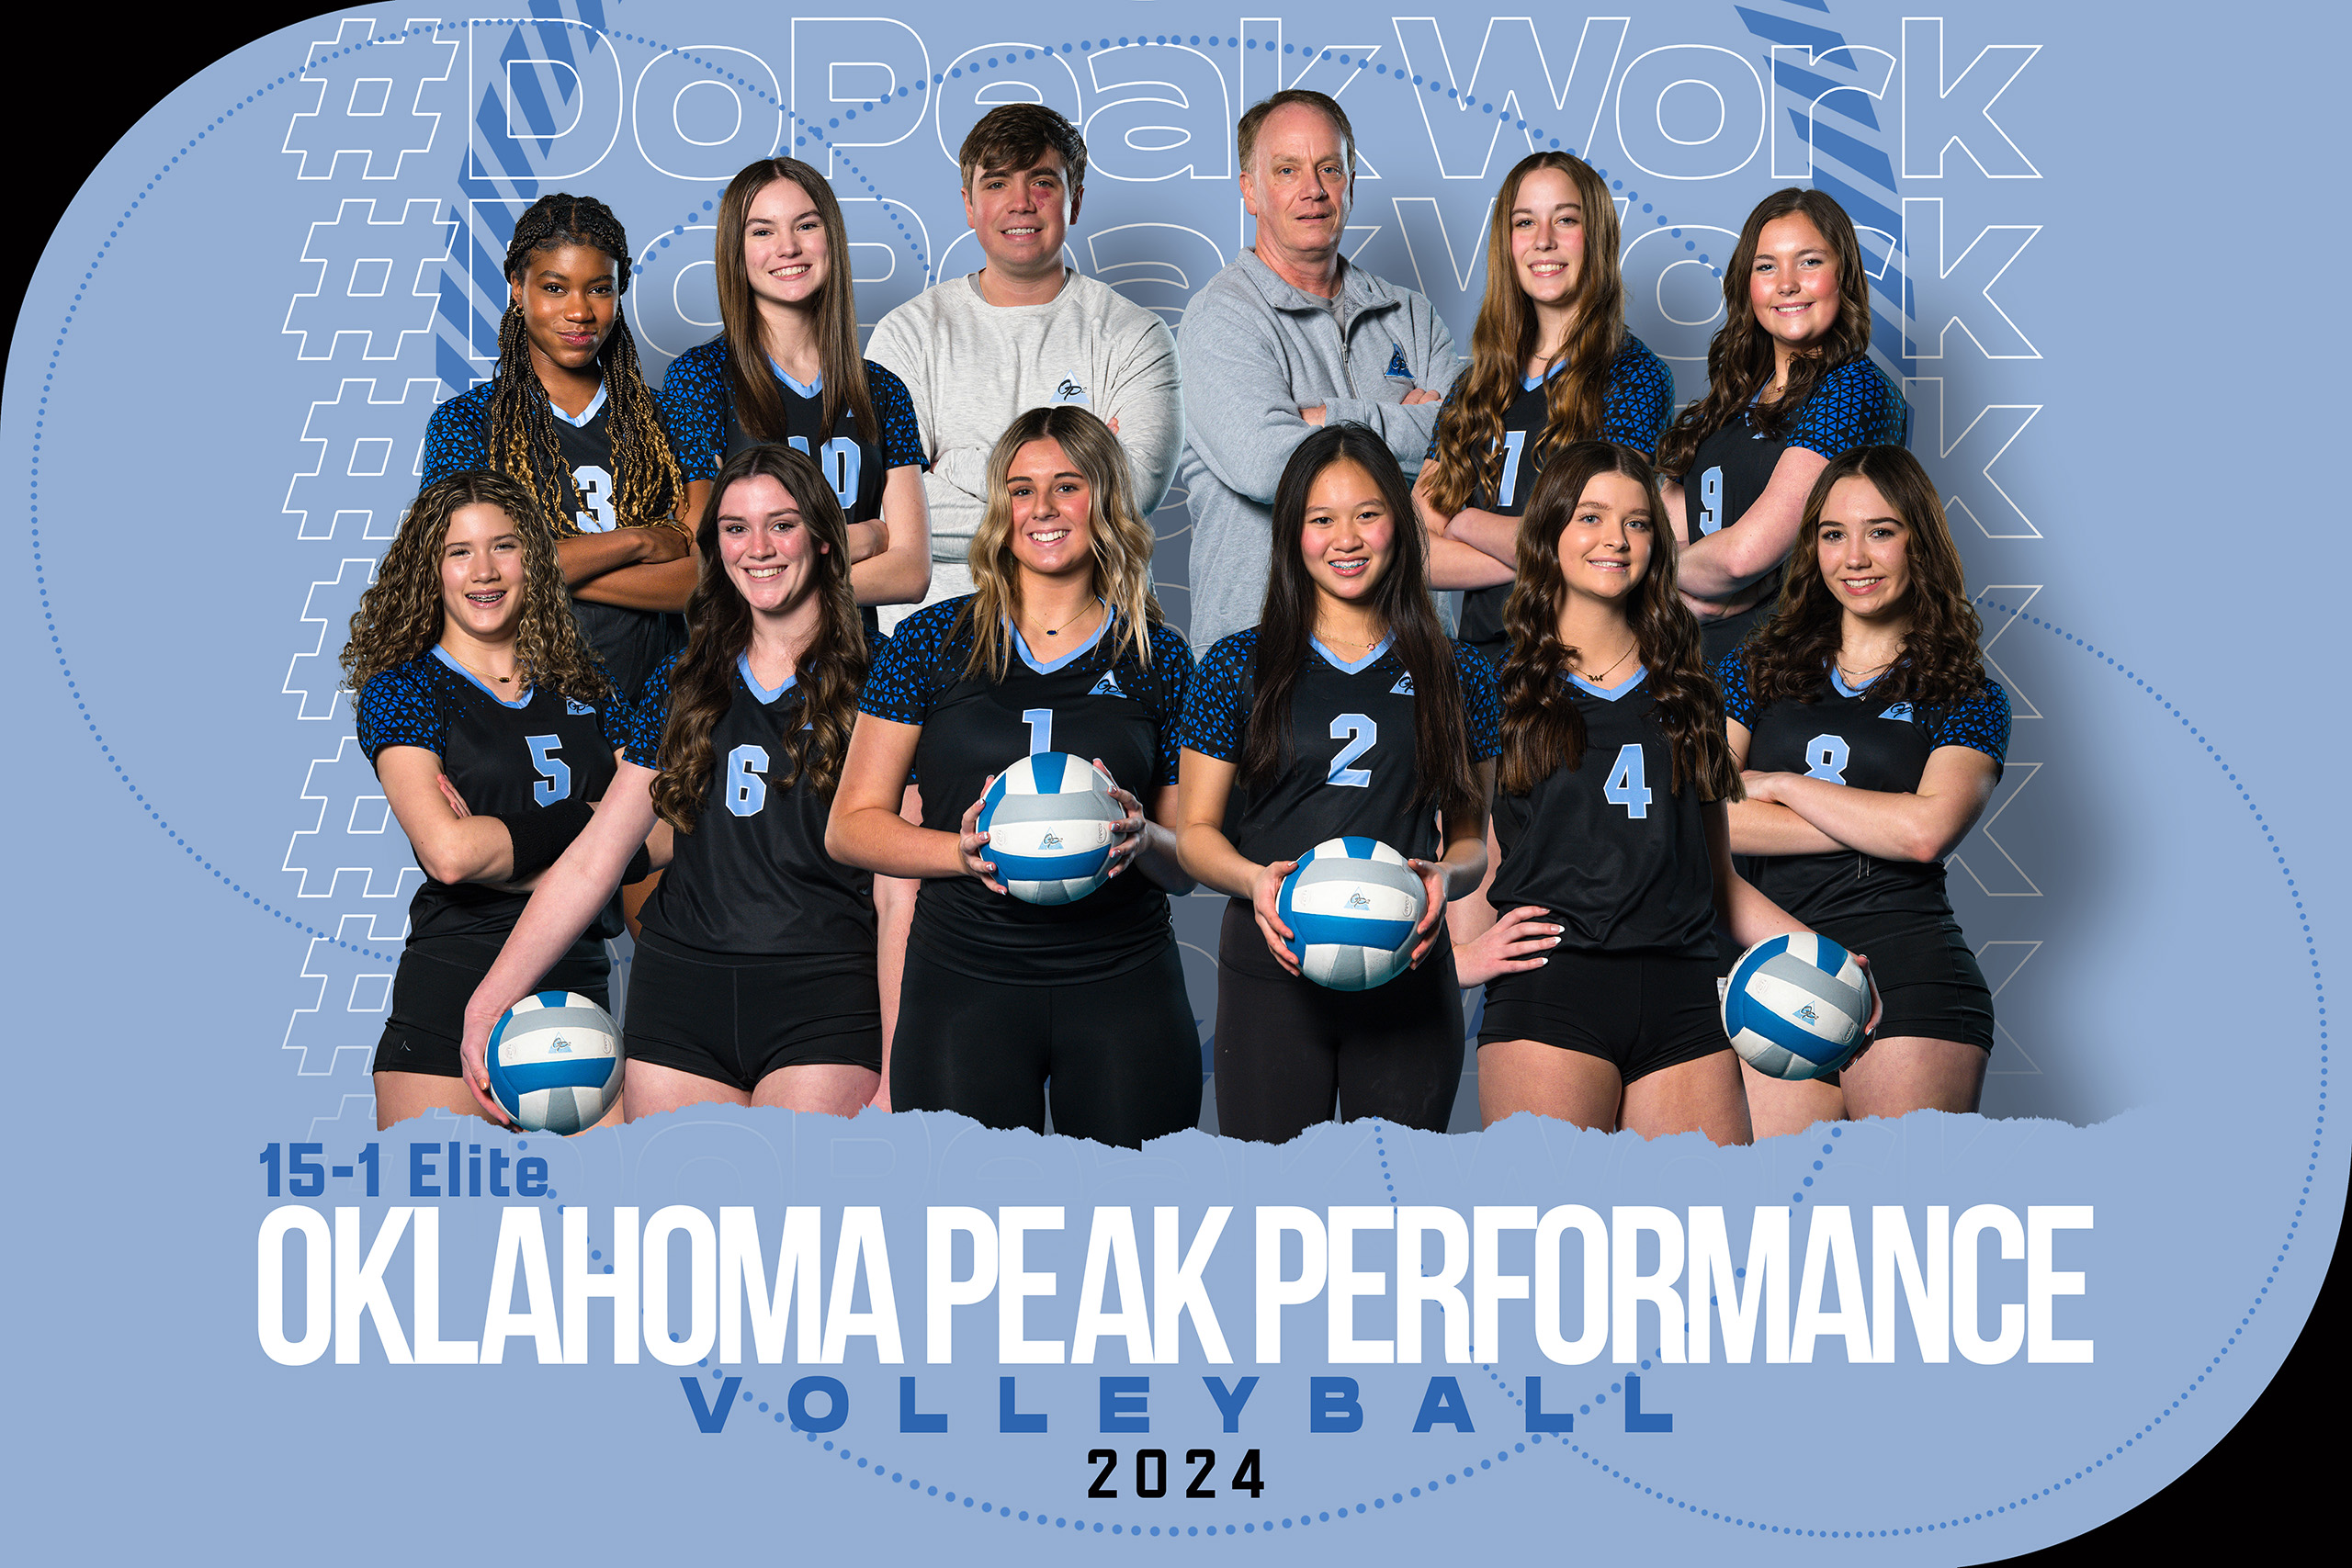 2024 Oklahoma Peak Performance 15-1